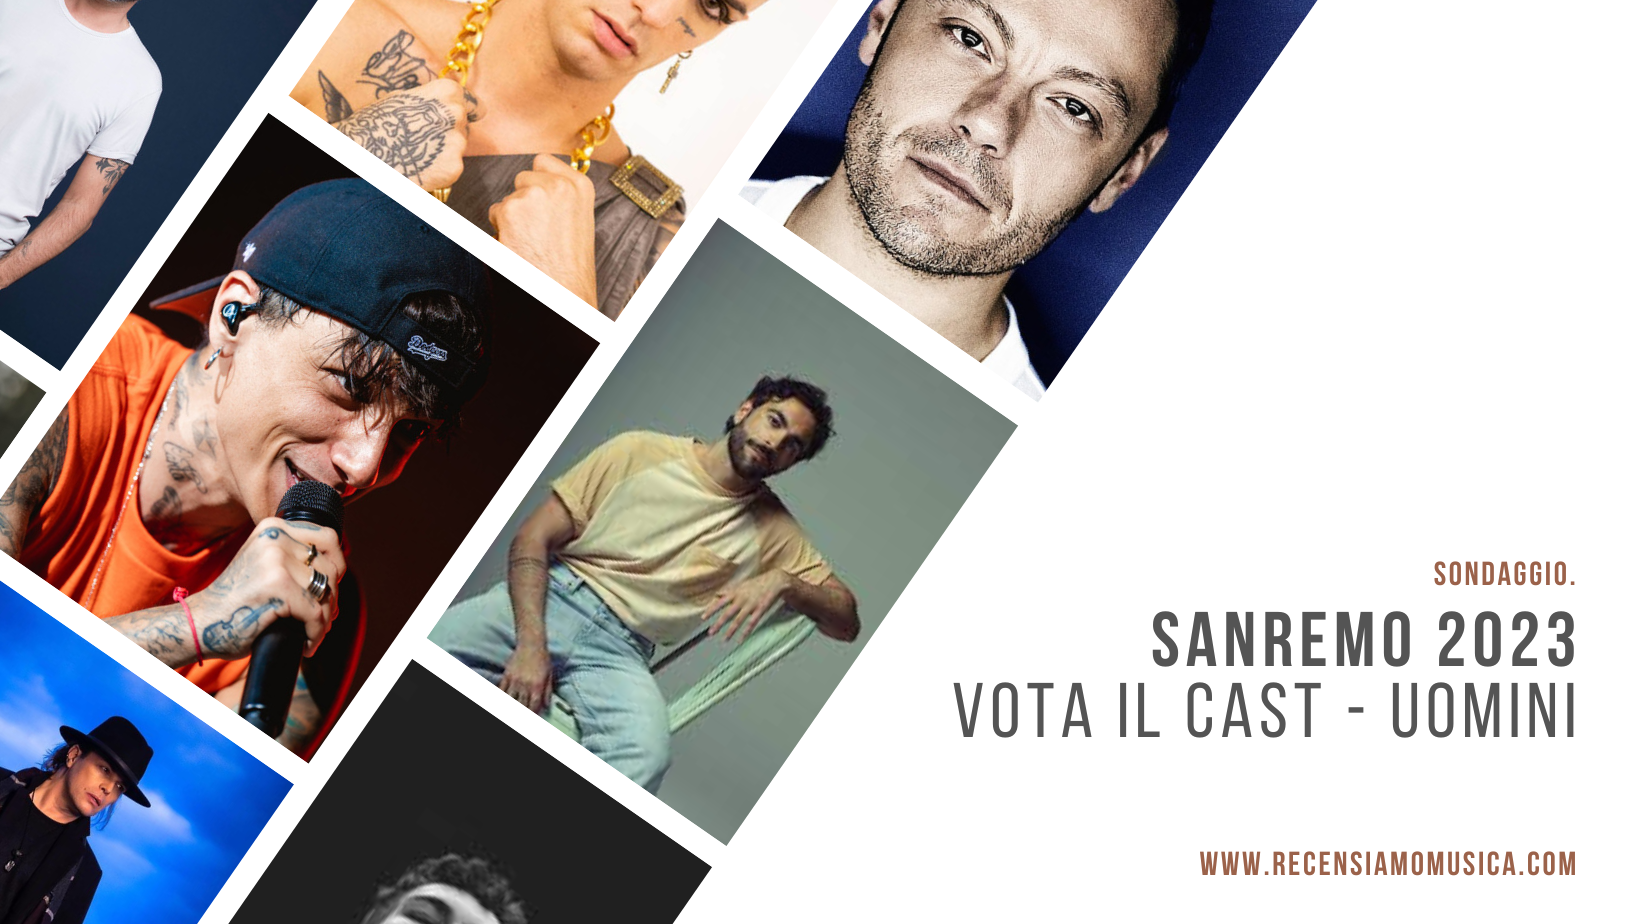 Sanremo 2023 - Cast Uomini Sondaggio